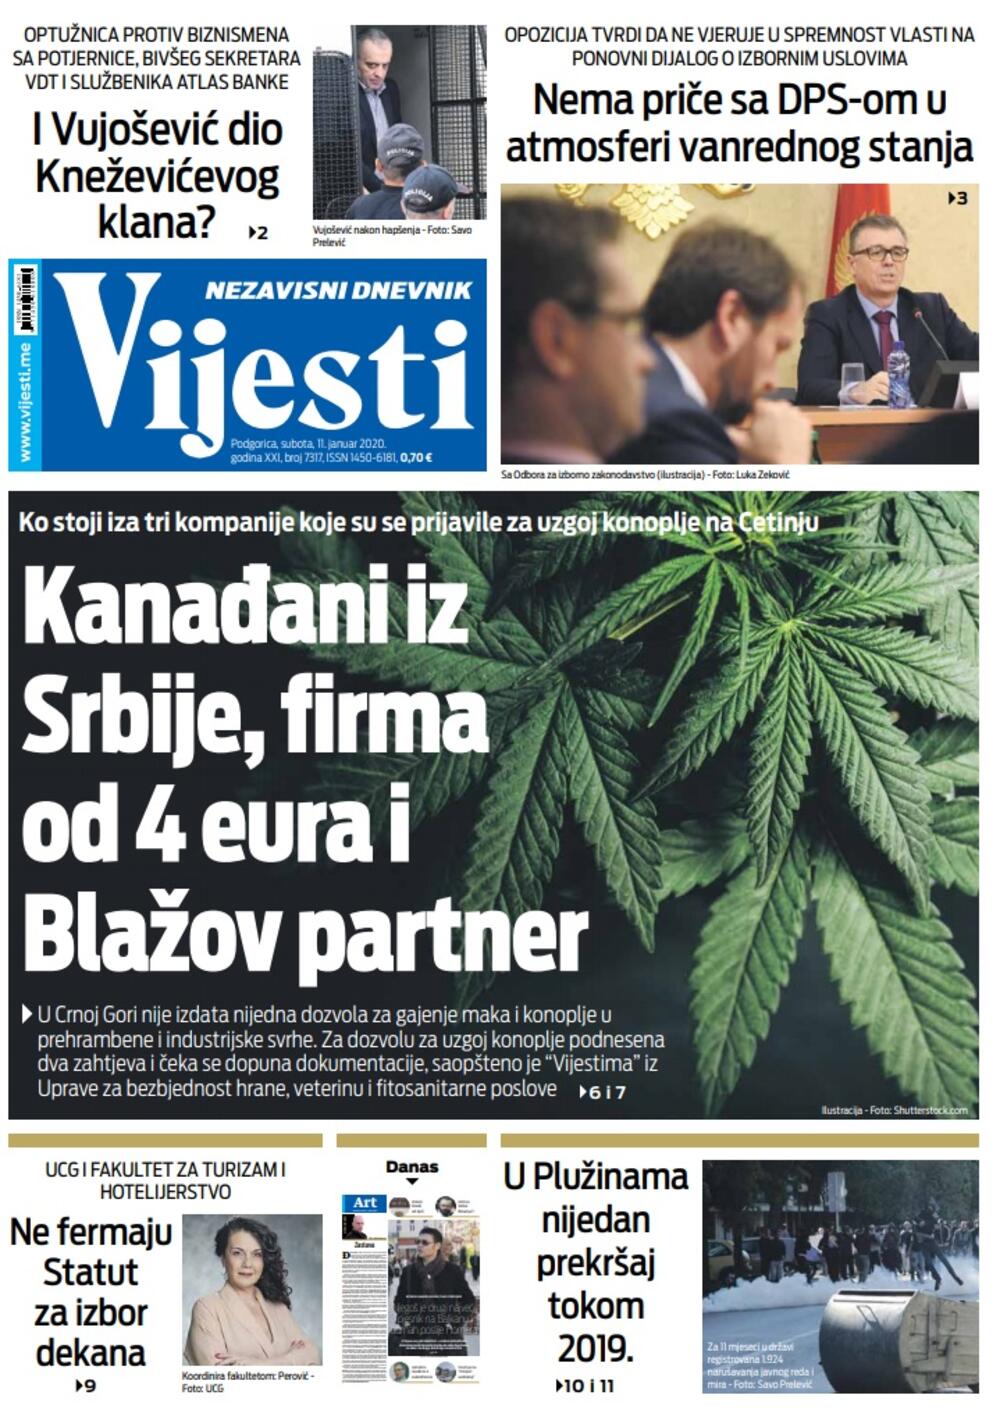 Naslovna strana "Vijesti" za 11. januar 2020. godine, Foto: "Vijesti"